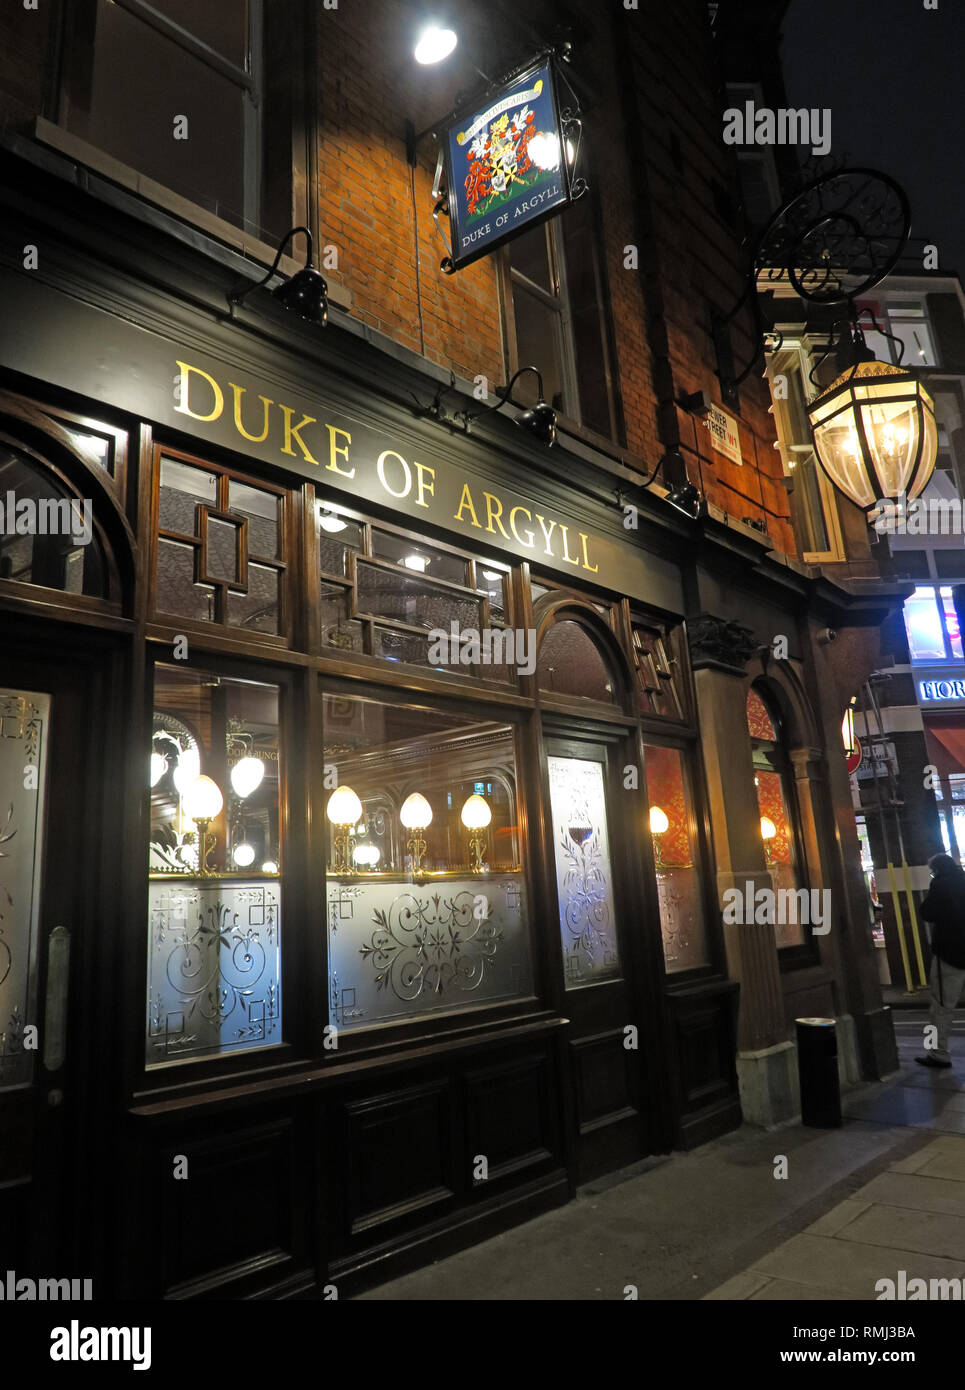 Duke of Argyll pub at night, 37 Brewer St, Soho, London, England, UK, W1F 0RY Stock Photo